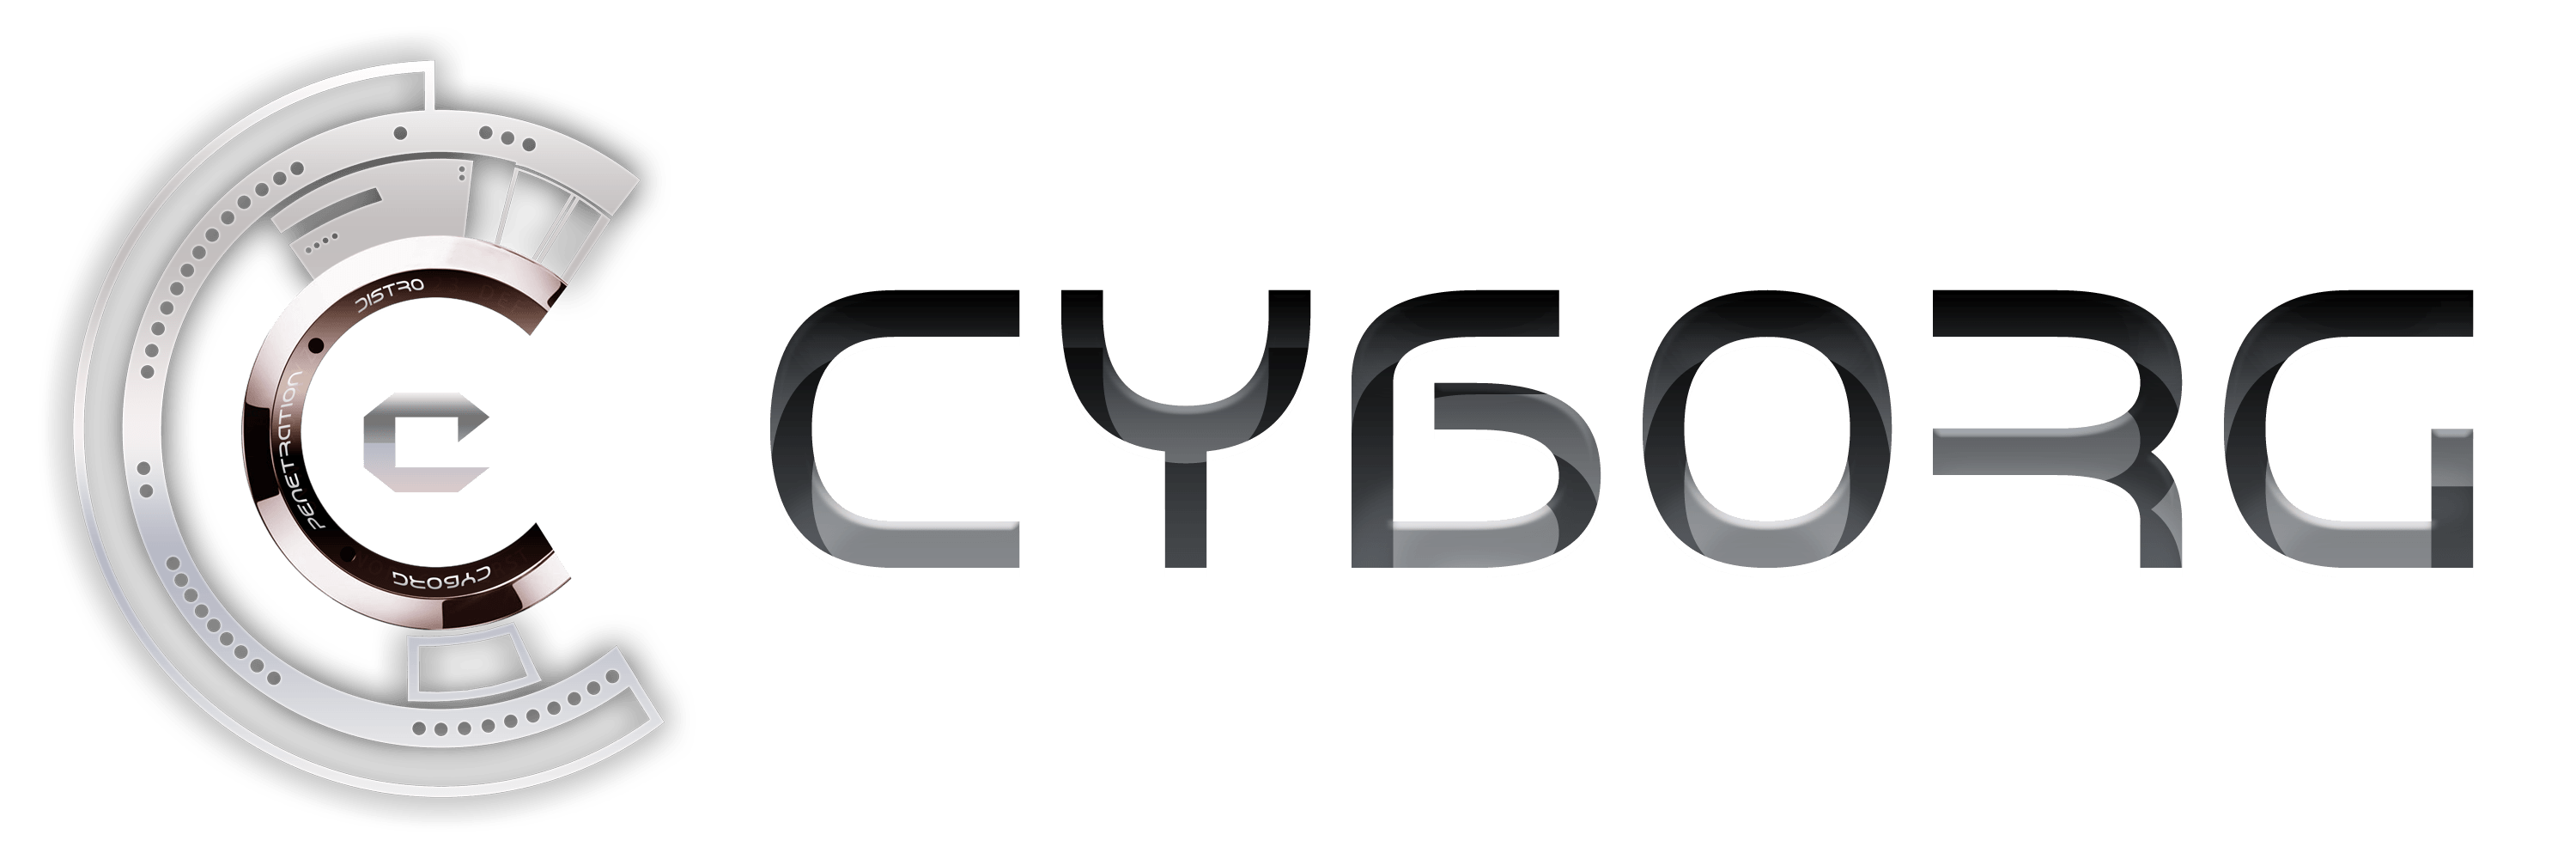 Cyborg Logo - cyborg-logo - 556 Forensics